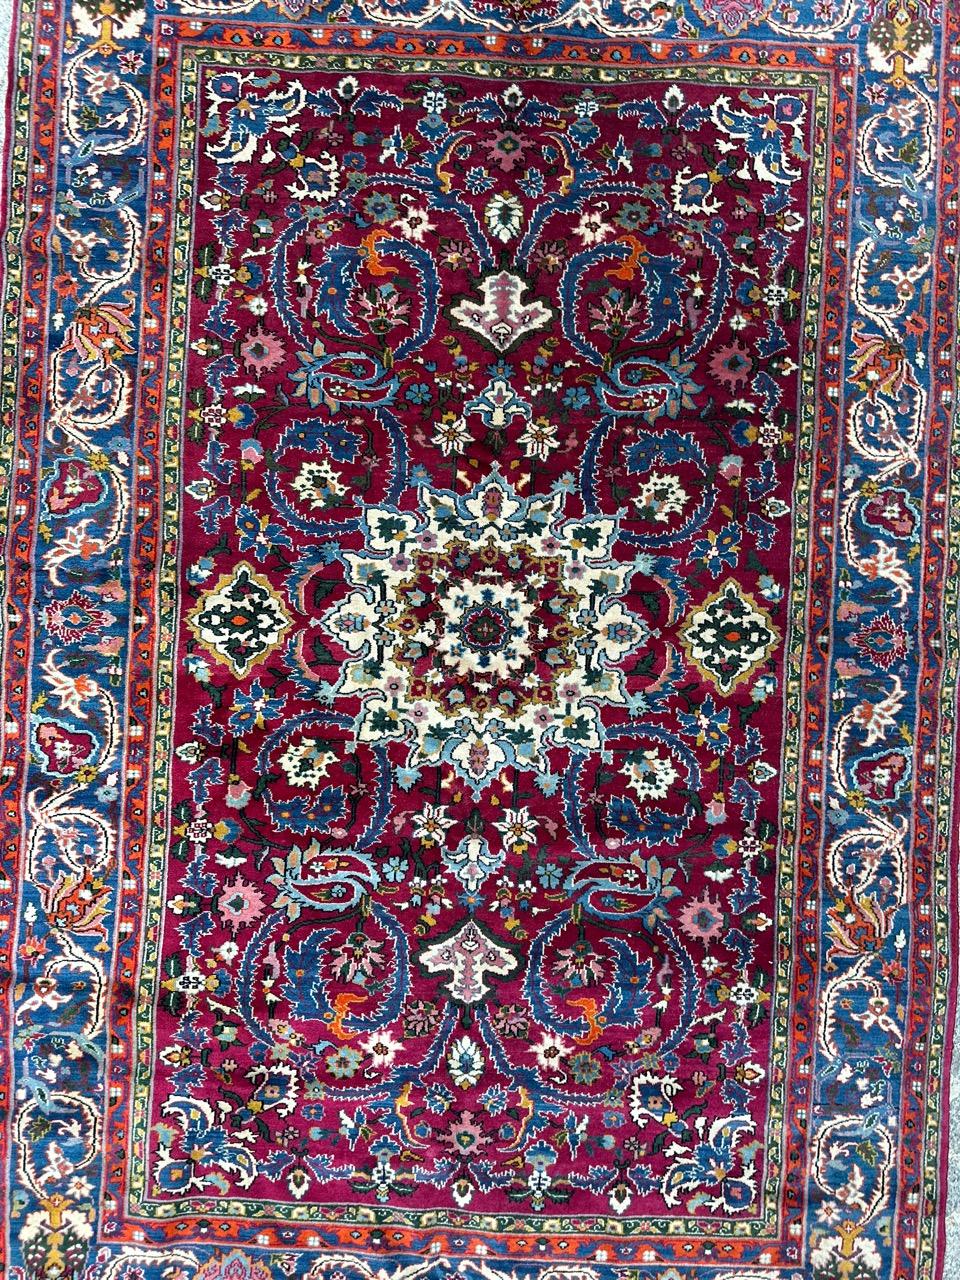 Schöner Aserbaidschan-Teppich, vollständig und fein handgeknüpft mit Wollsamt auf Baumwollgrund.
Wir stellen ein Meisterwerk der Eleganz vor: Handgewebter Teppich aus dem späten 20.

Entdecken Sie die Faszination eines sorgfältig handgeknüpften